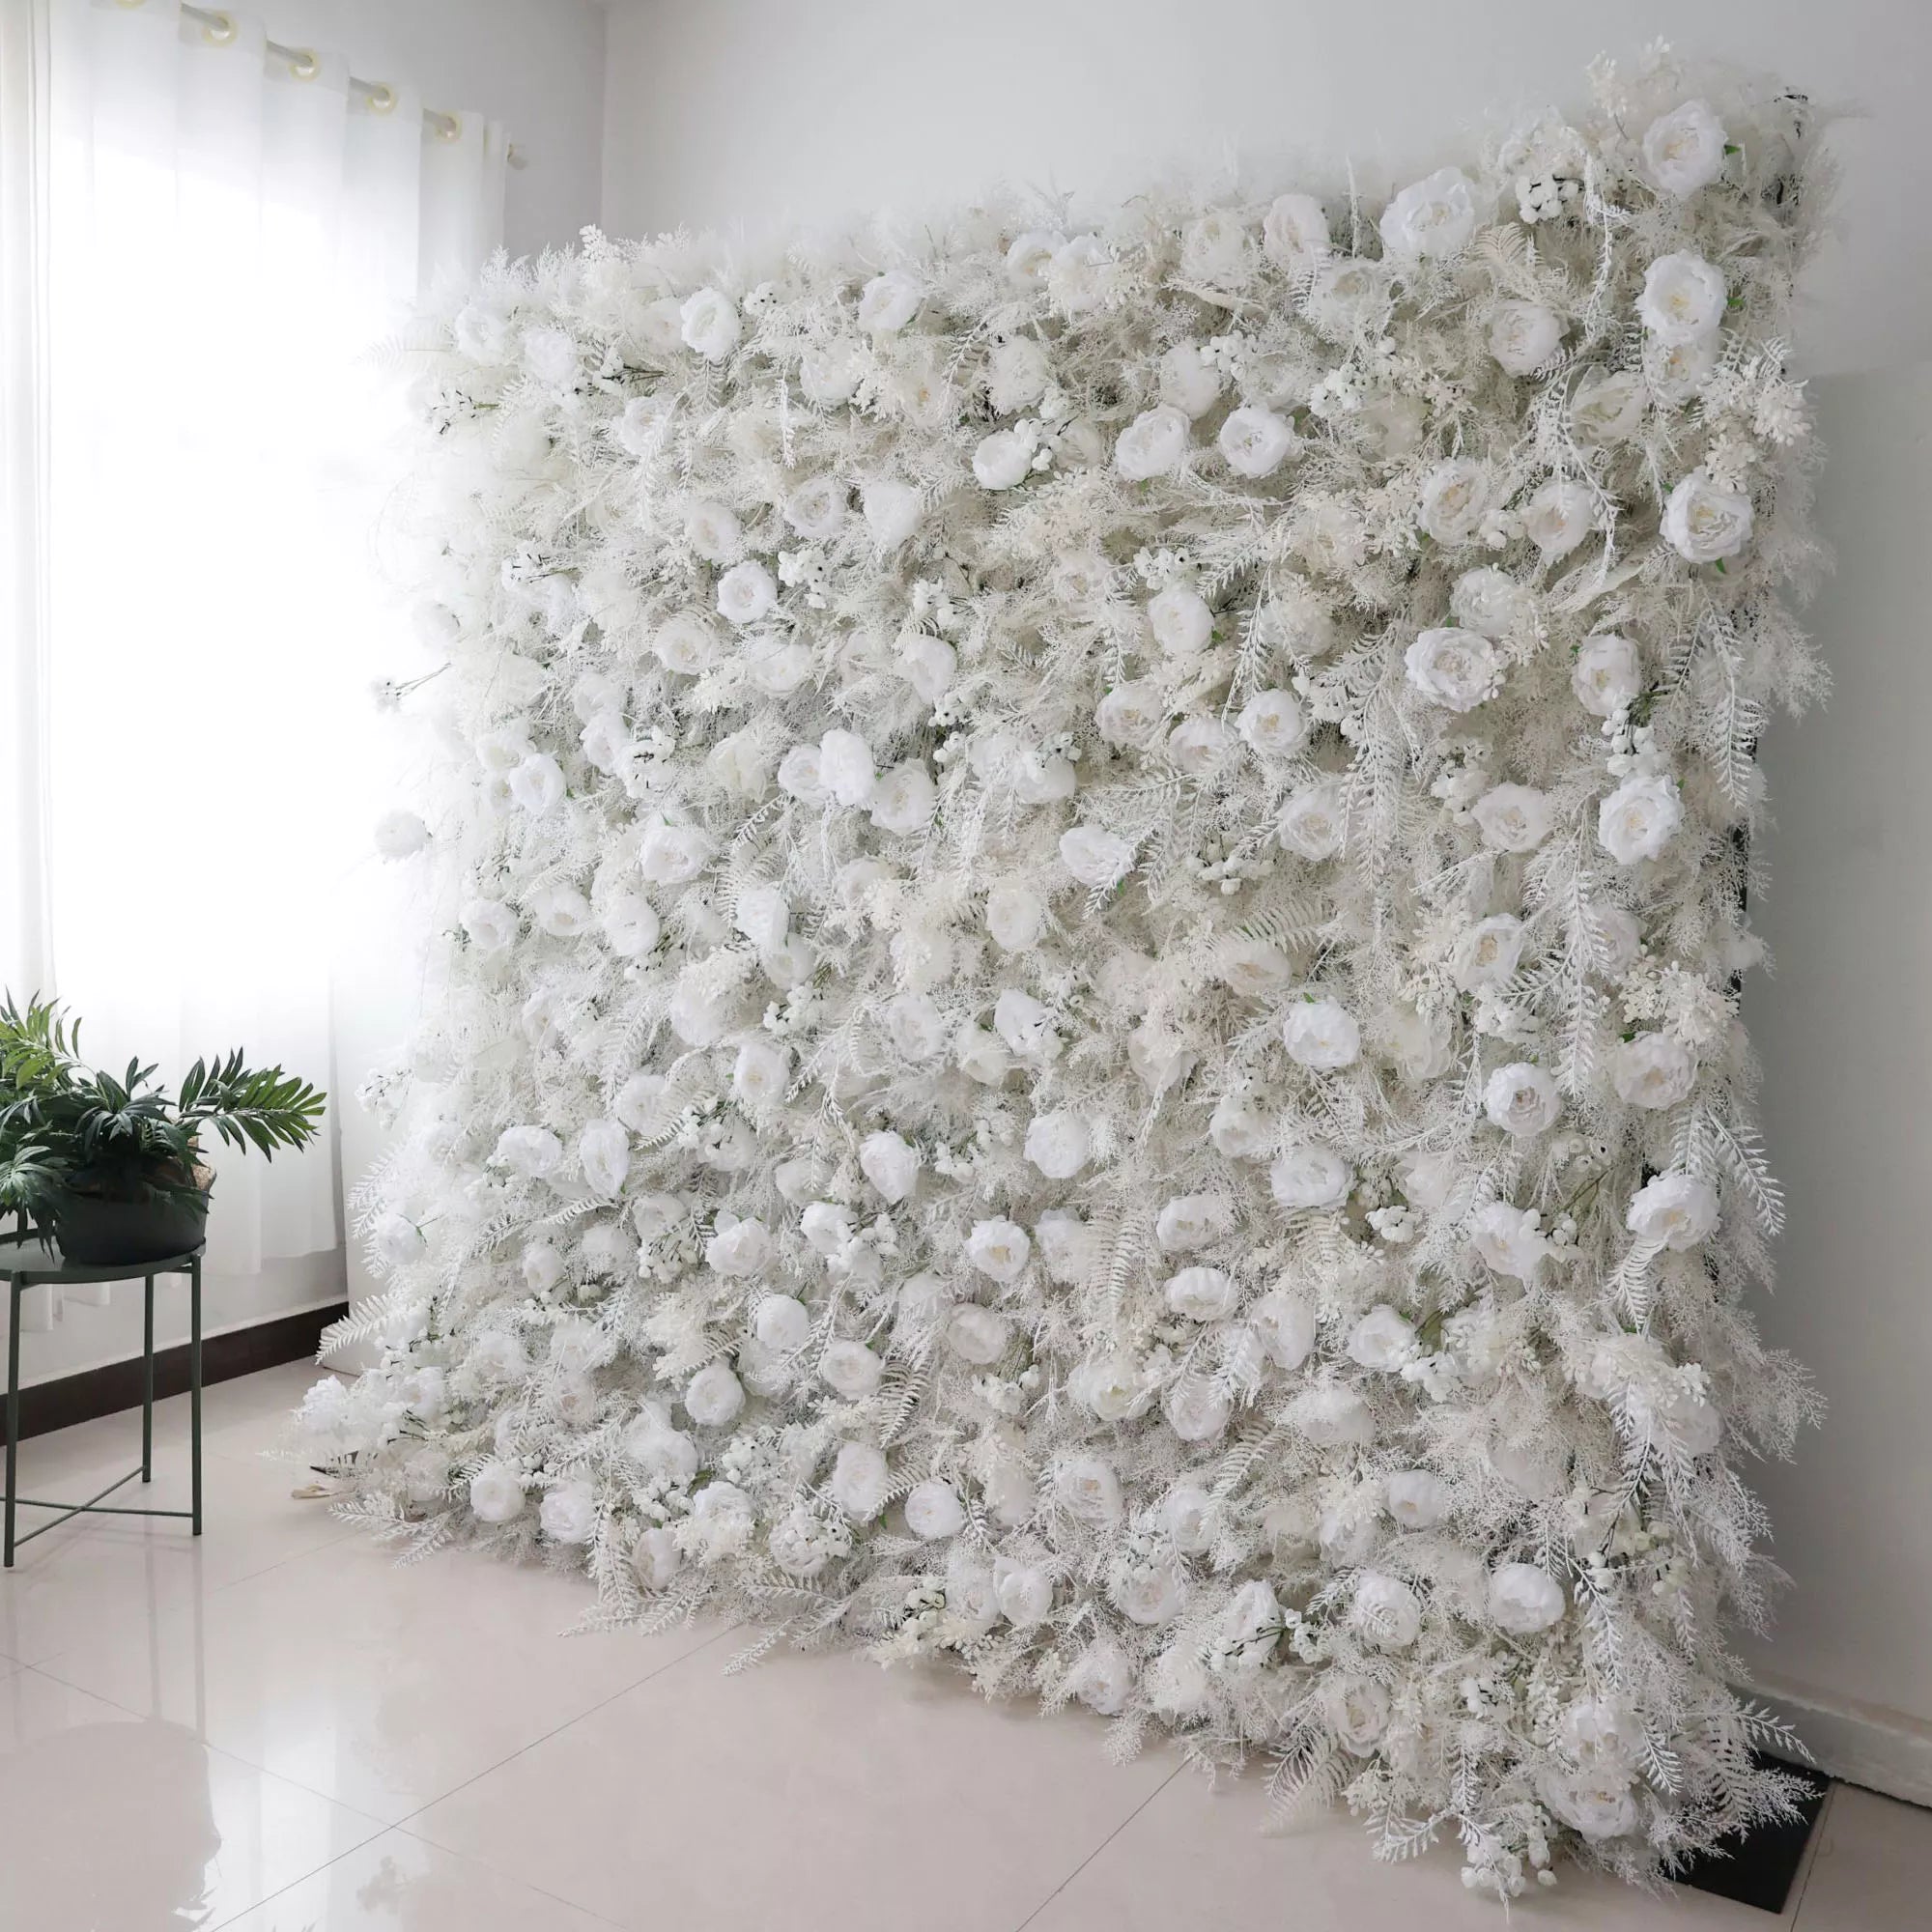 جدار زهور فالار الأبيض الثلجي مع لهجات السرخس الفاترة: التقاط جوهر الشتاء لللوكسي